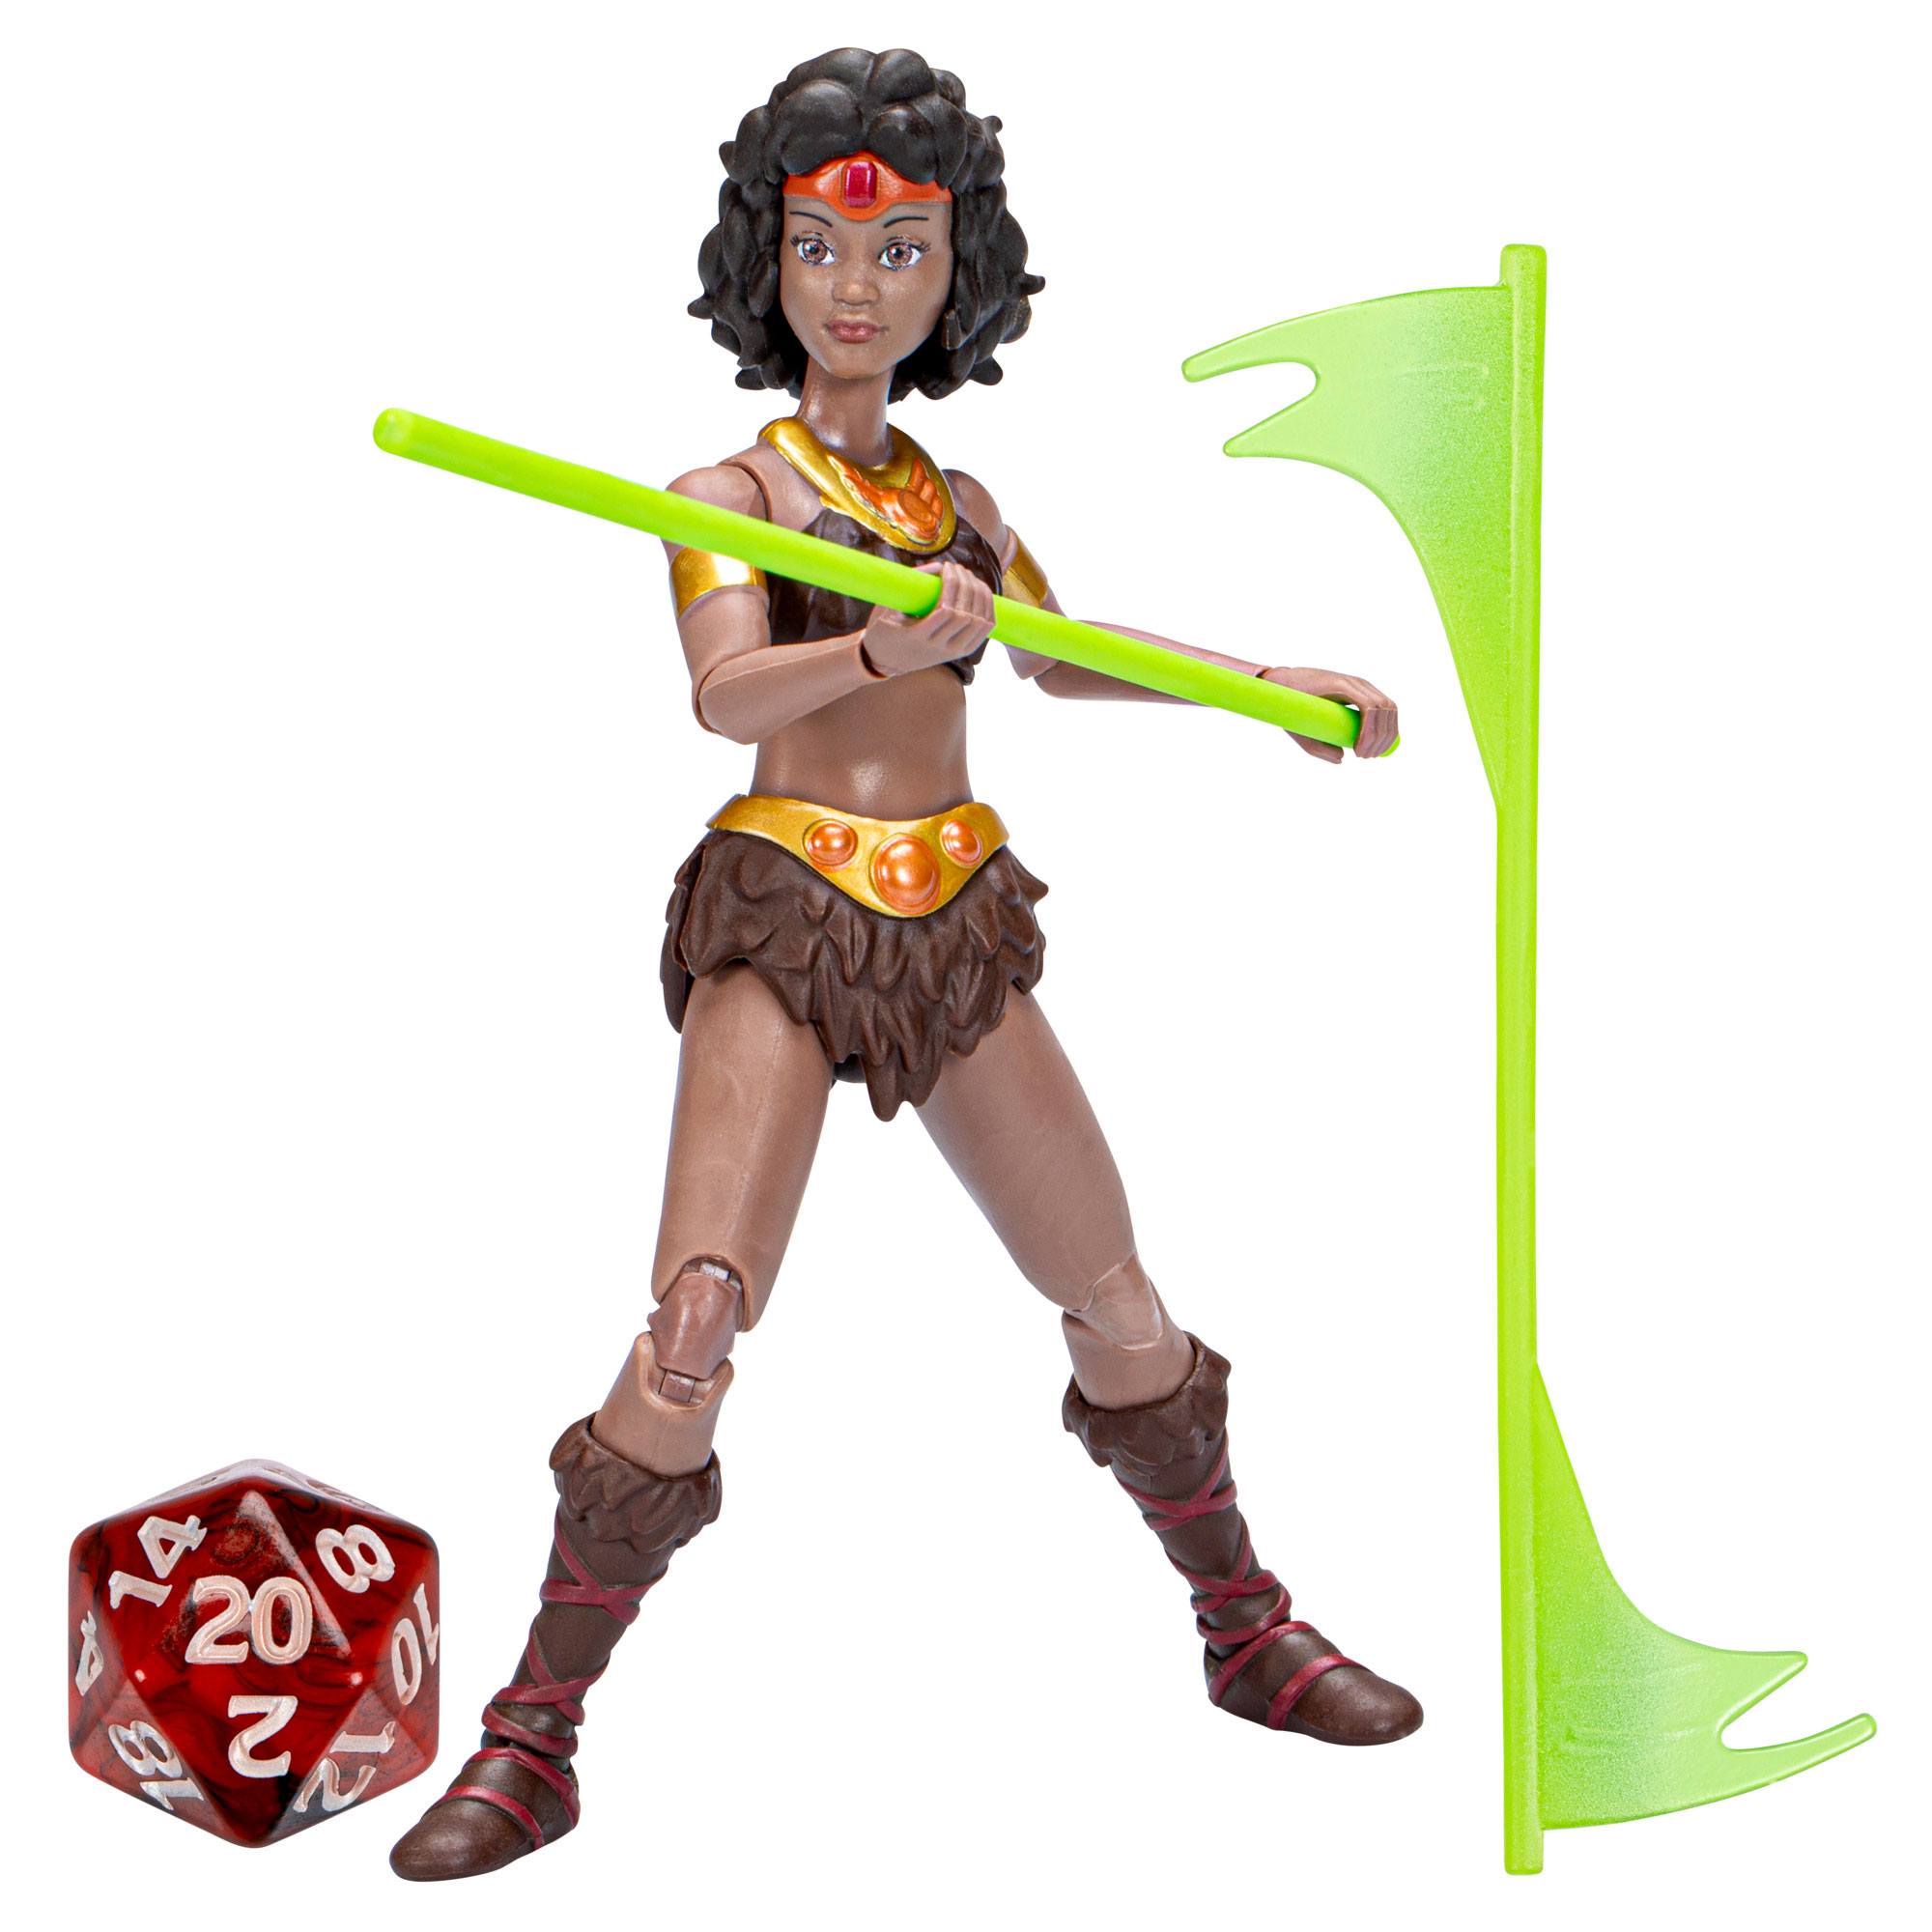 Dungeons & Dragons (Im Land der fantastischen Drachen) Actionfigur Diana 15 cm HASF4883 5010994192624